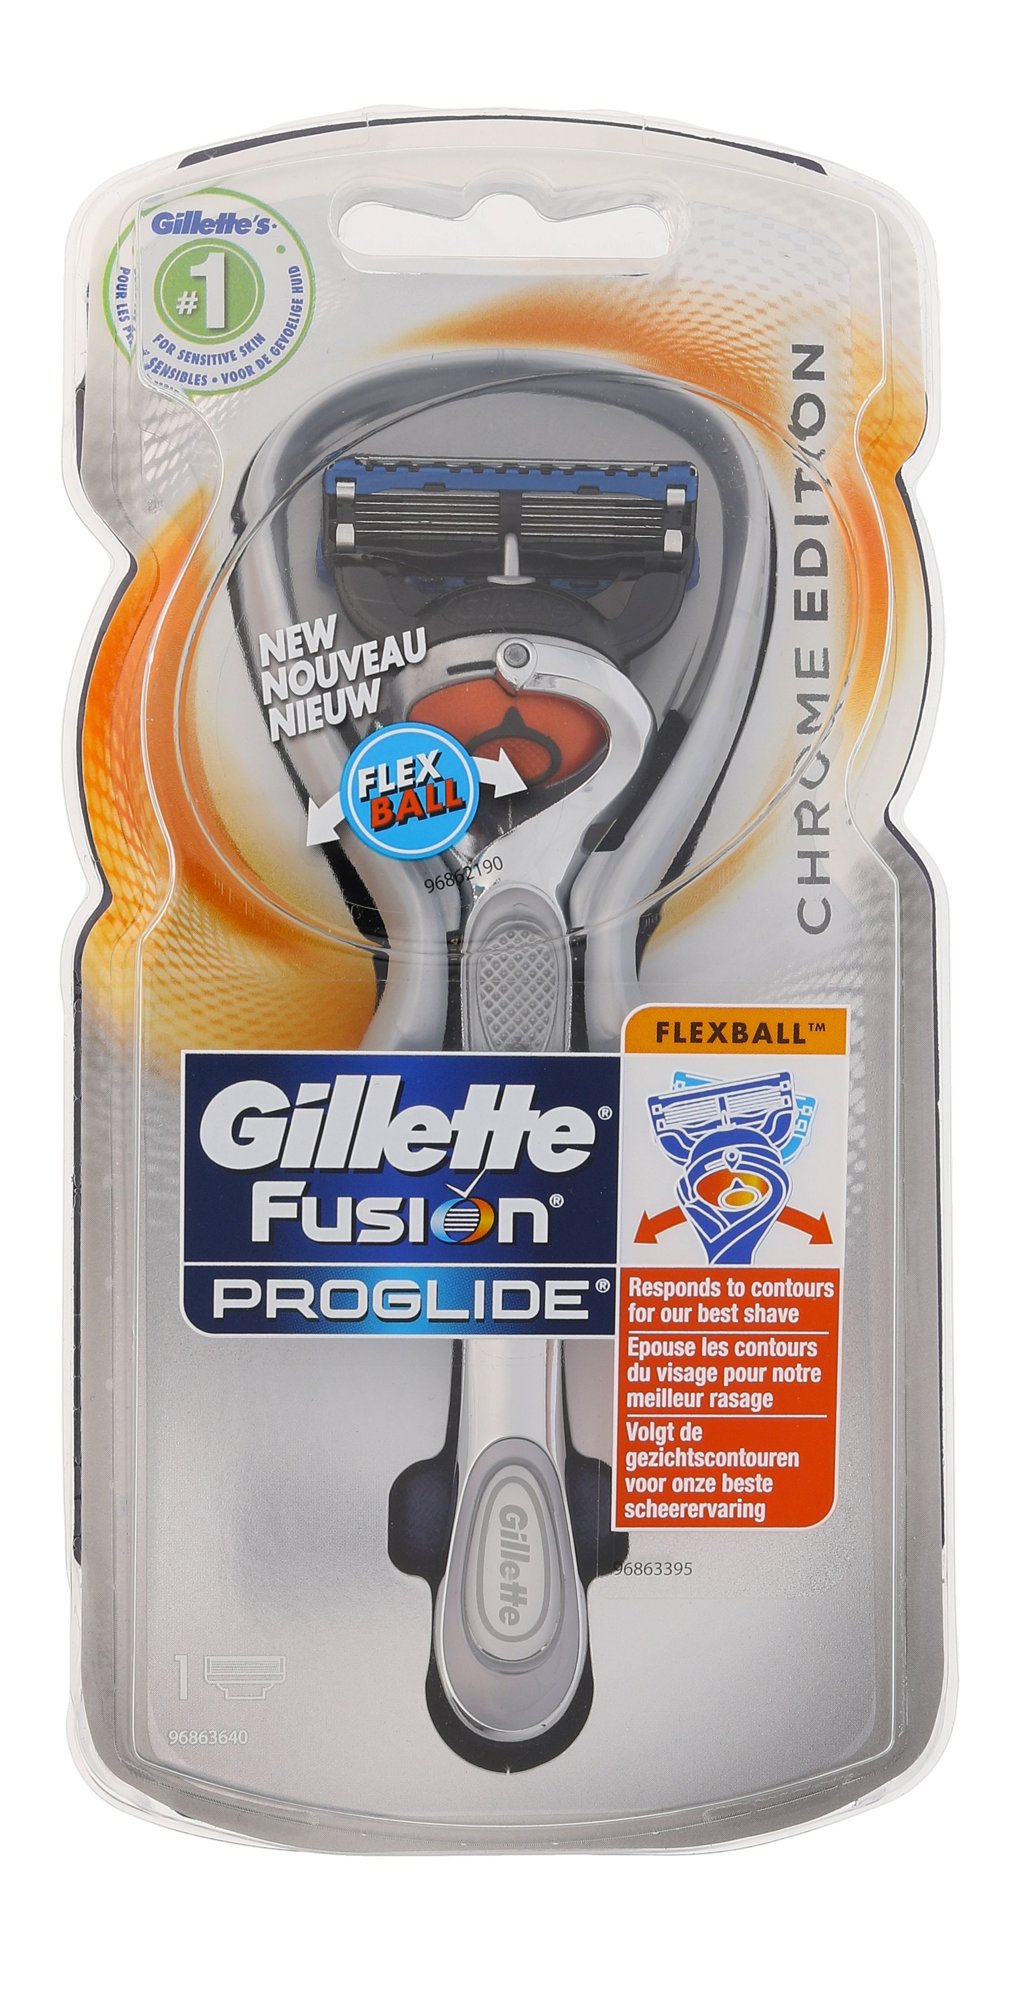 Gillette Fusion Proglide Flexball Chrome